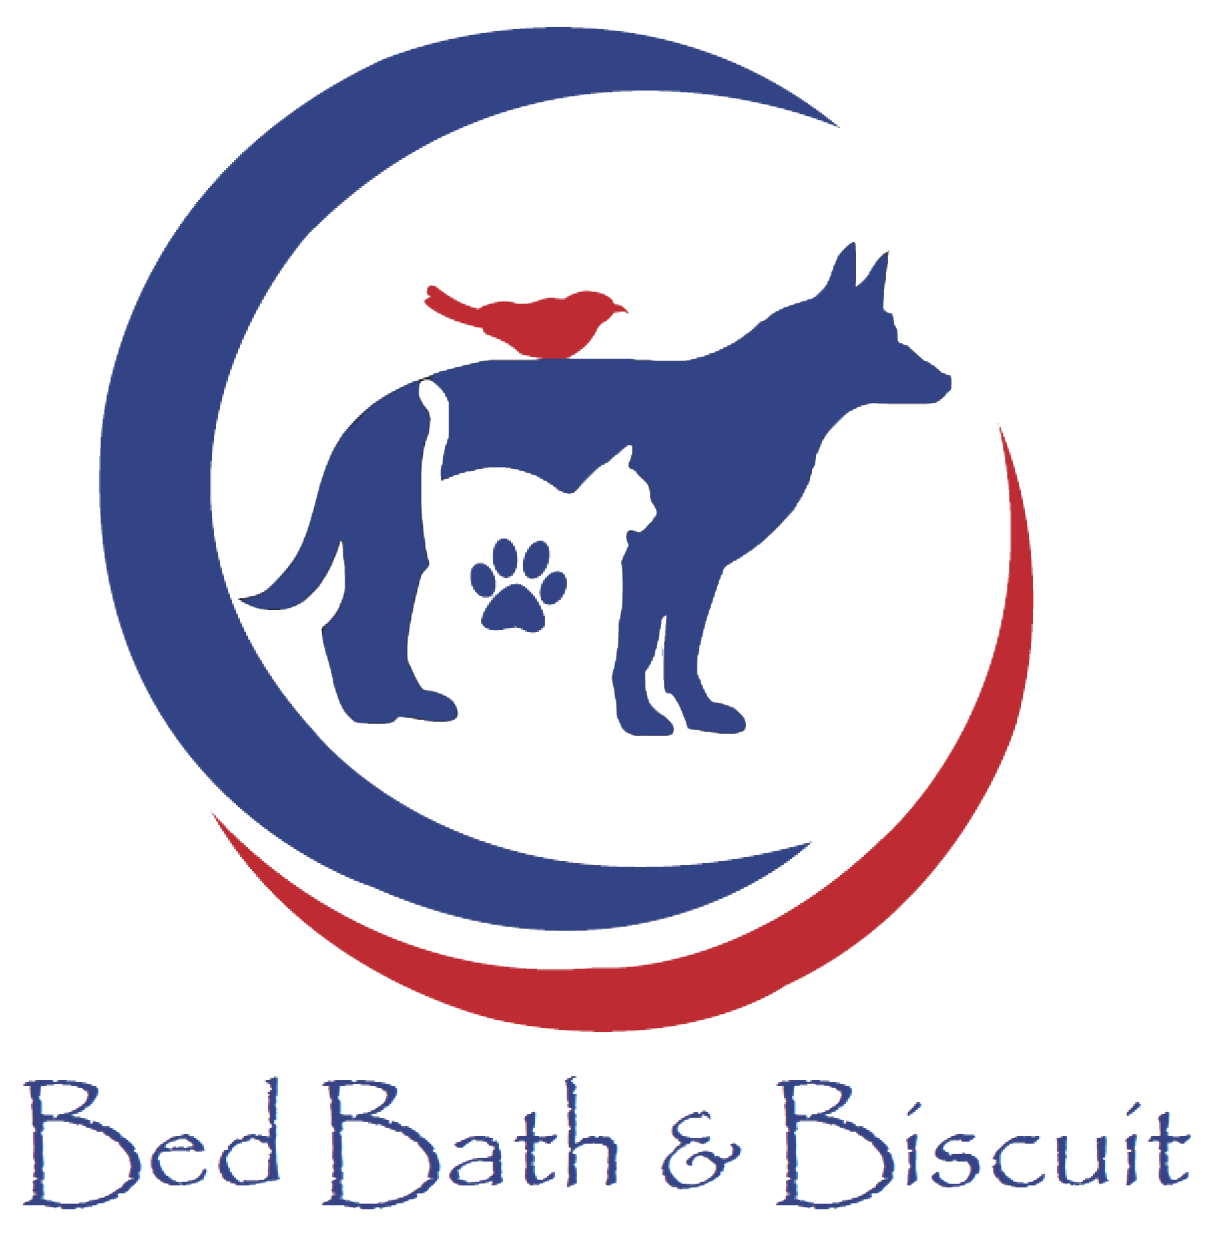 Bed Bath & Biscuit